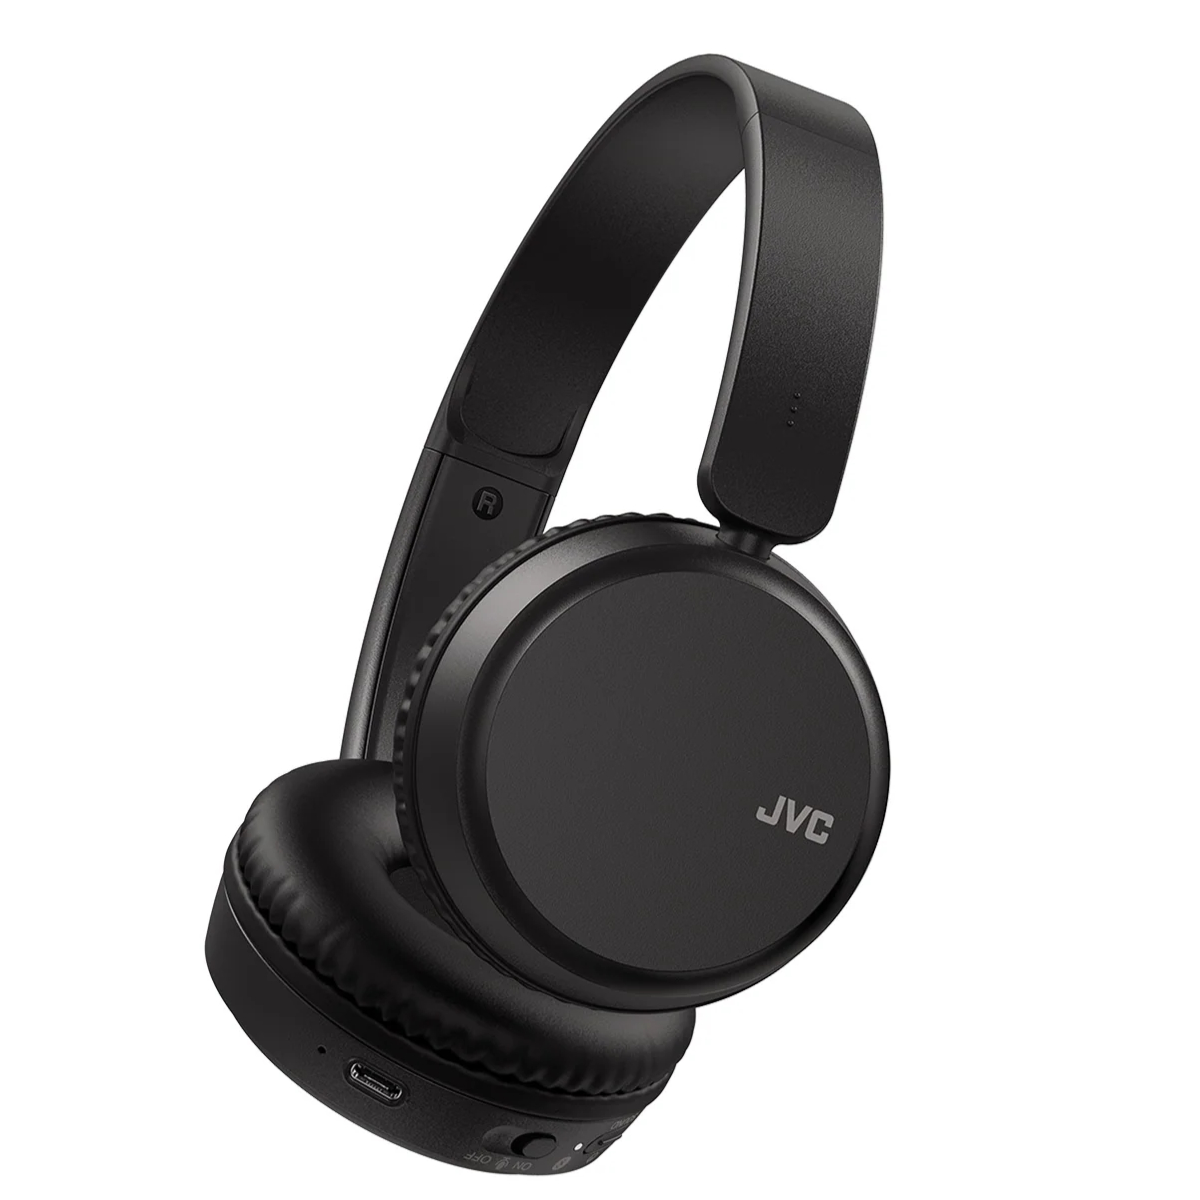  JVC HA-S36W-B Bluetooth slušalice. Uživajte u muzici bez kablova do 35 sati bežičnog slušanja. Uroniti u svoje omiljene pesme bez brige o bateriji., JVC HA-S36W-B Bluetooth slušalice. Uživajte u muzici bez kablova do 35 sati bežičnog slušanja. Uroniti u 